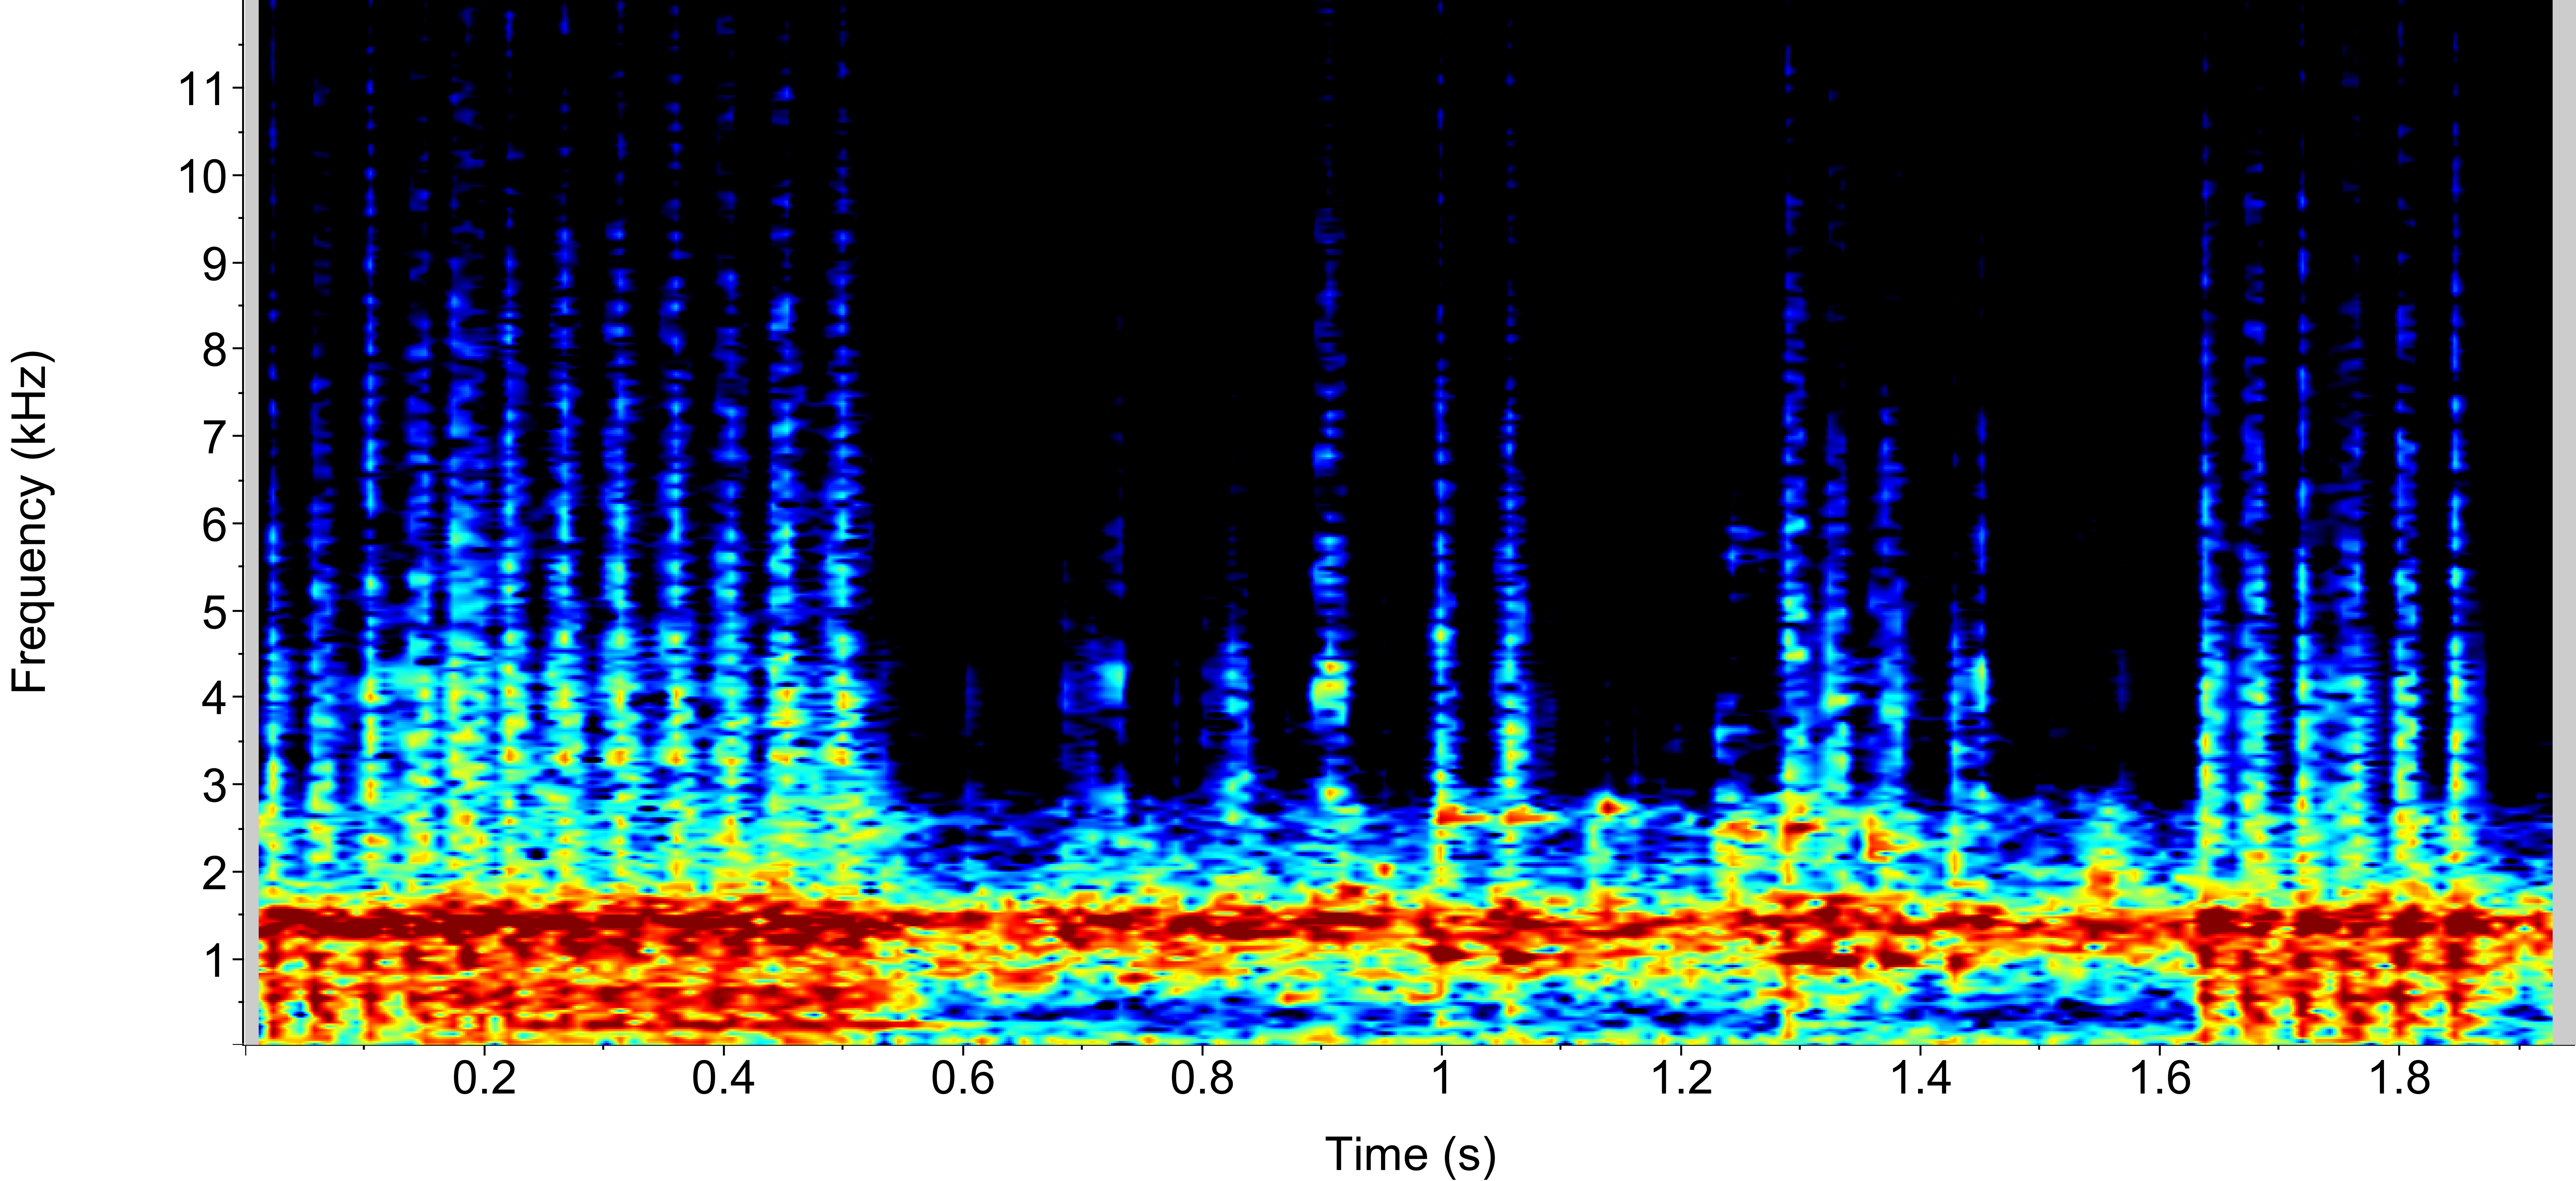 Striped cusk-eel spectrogram